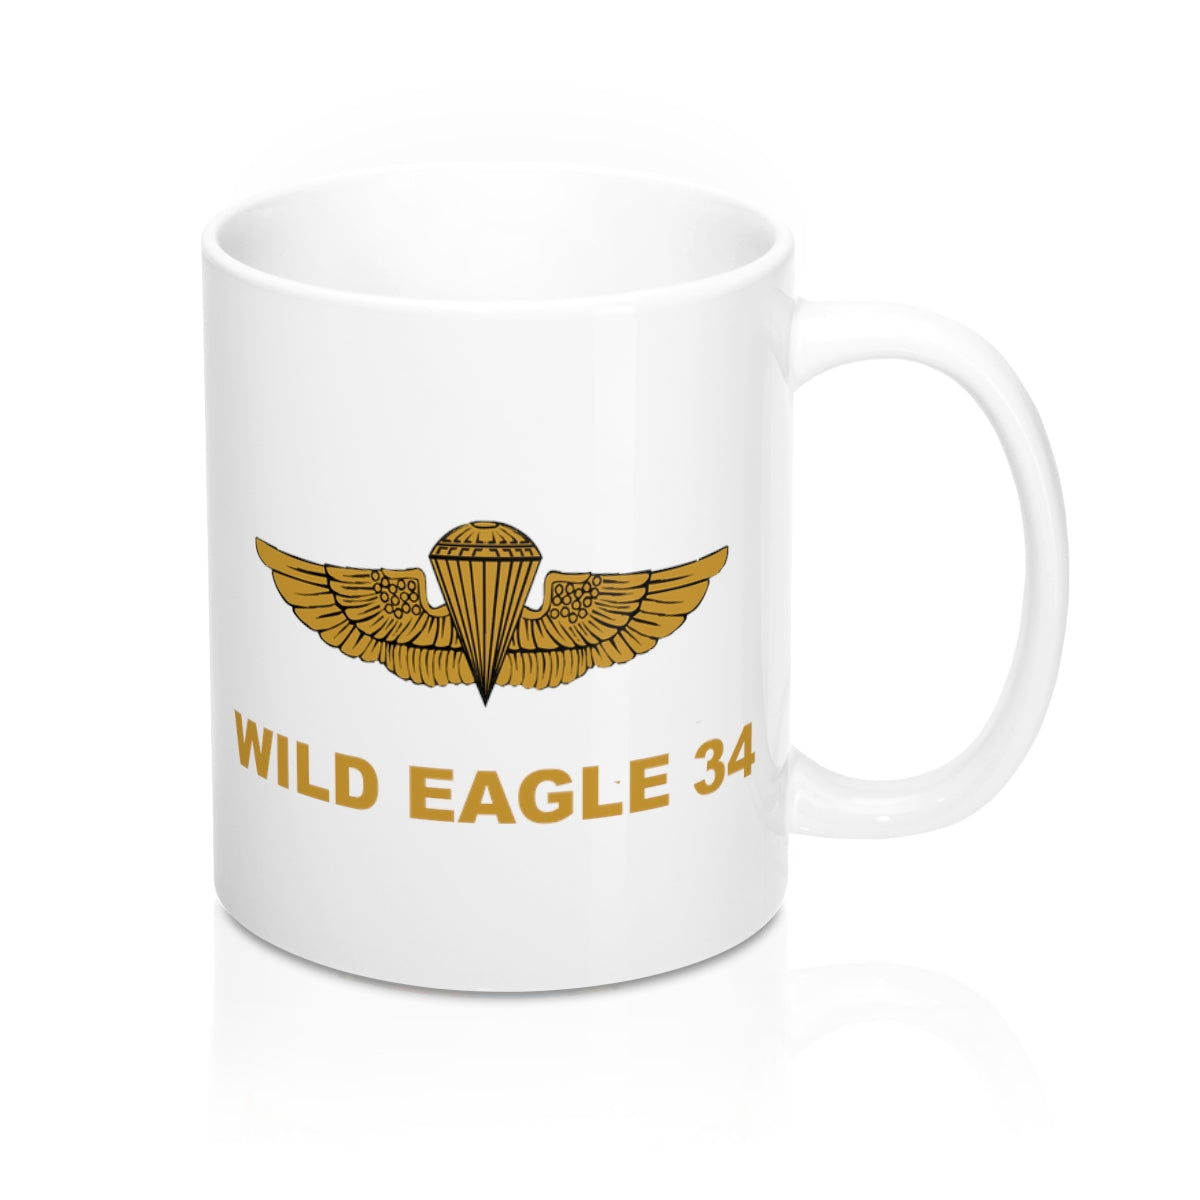 Wild Eagle 34